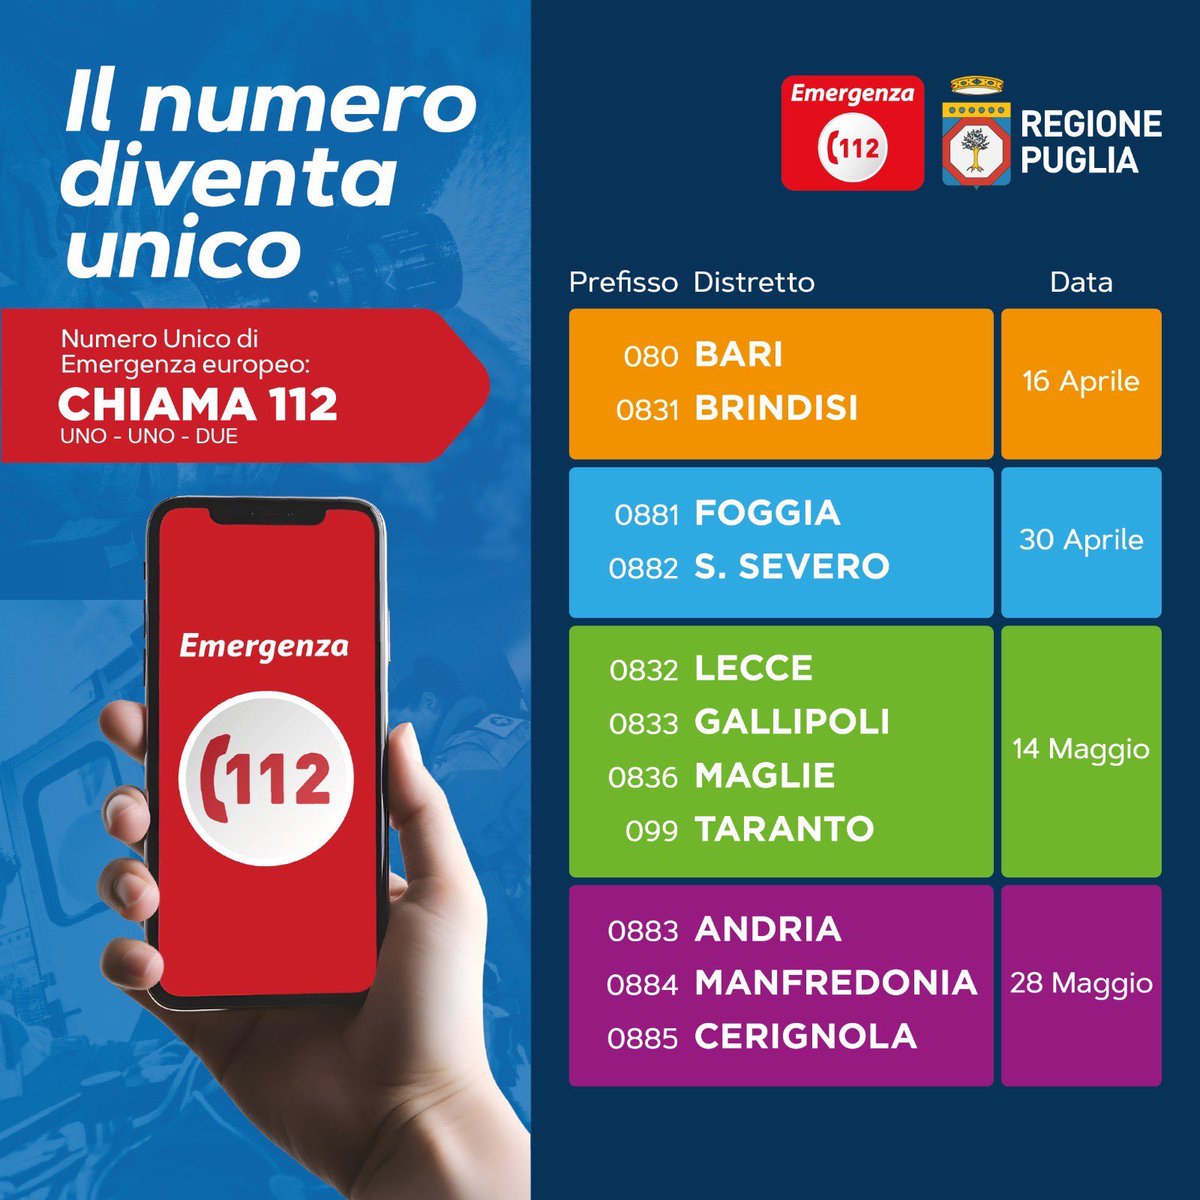 Puglia - Avvio del Numero Unico Emergenza europeo (NUE 112), che sarà attivo dal 16 aprile al 28 maggio su tutto il territorio #nue112 #regionepuglia #bari #brindisi #foggia #taranto #brindisi #bat